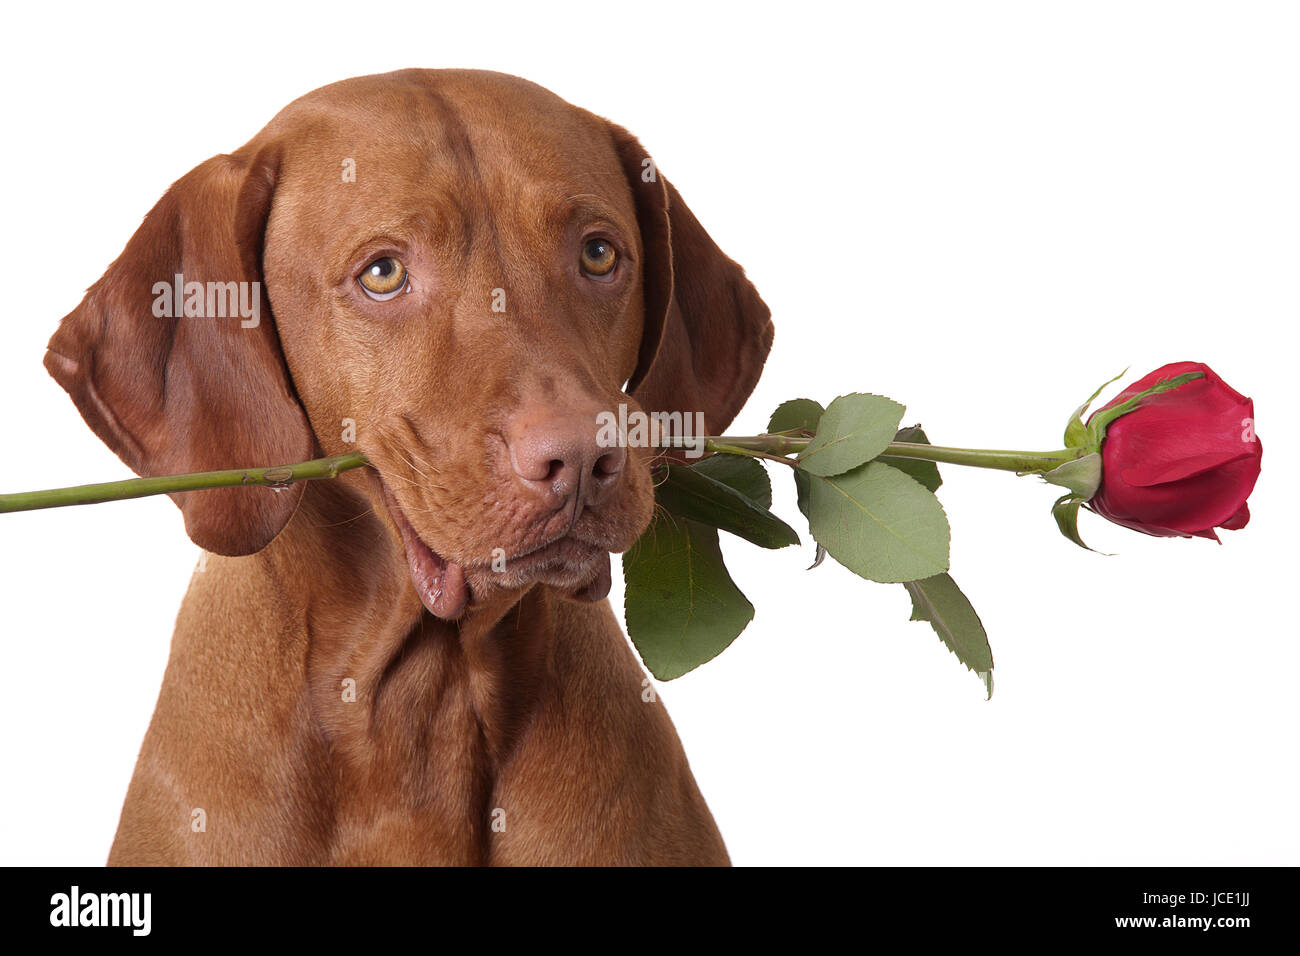 Hund hält eine rote Rose im Mund Stockfotografie - Alamy